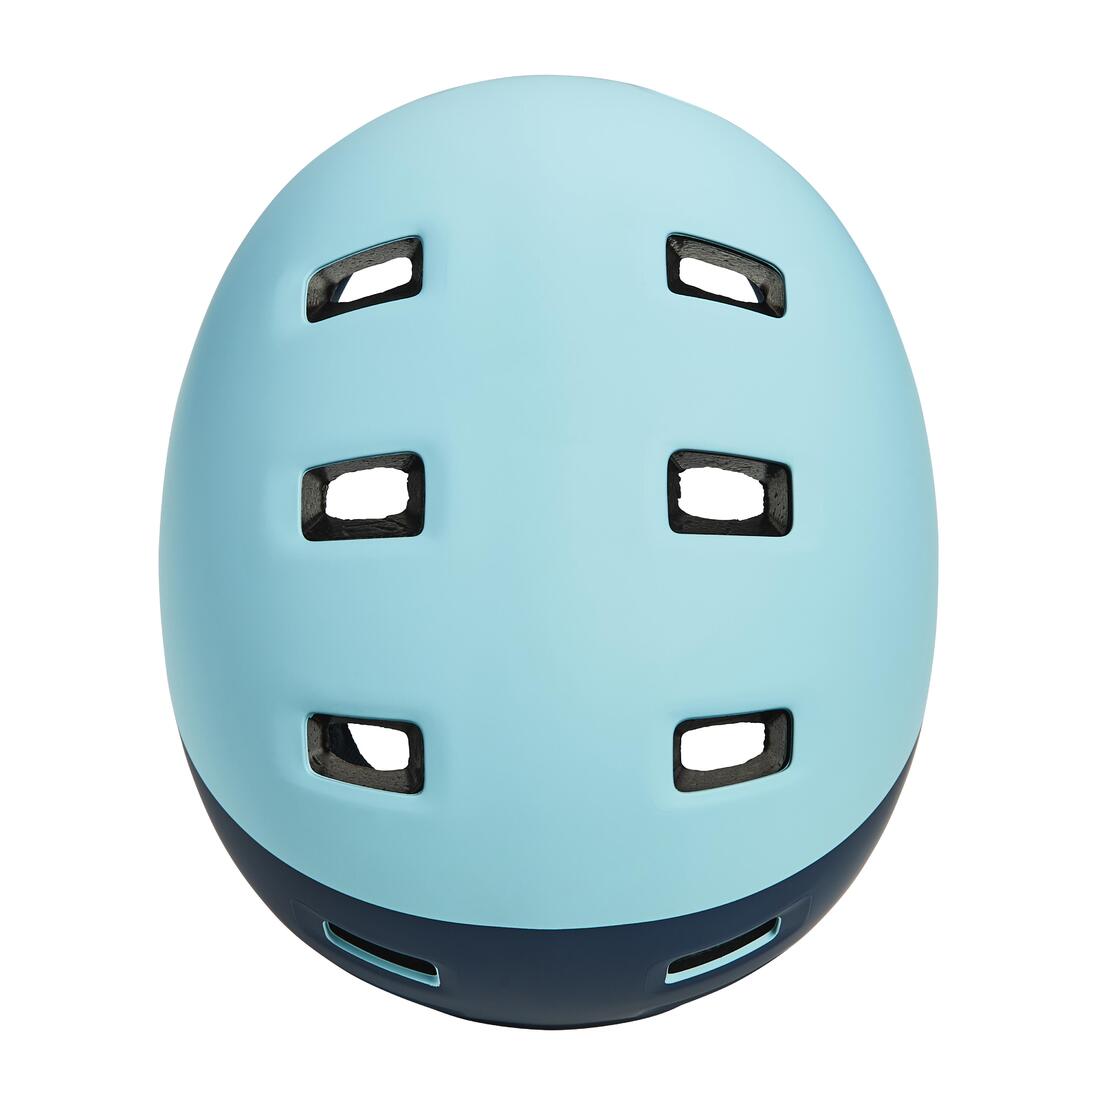 BTWIN (ビトウィン) サイクリング ティーン向けヘルメット520